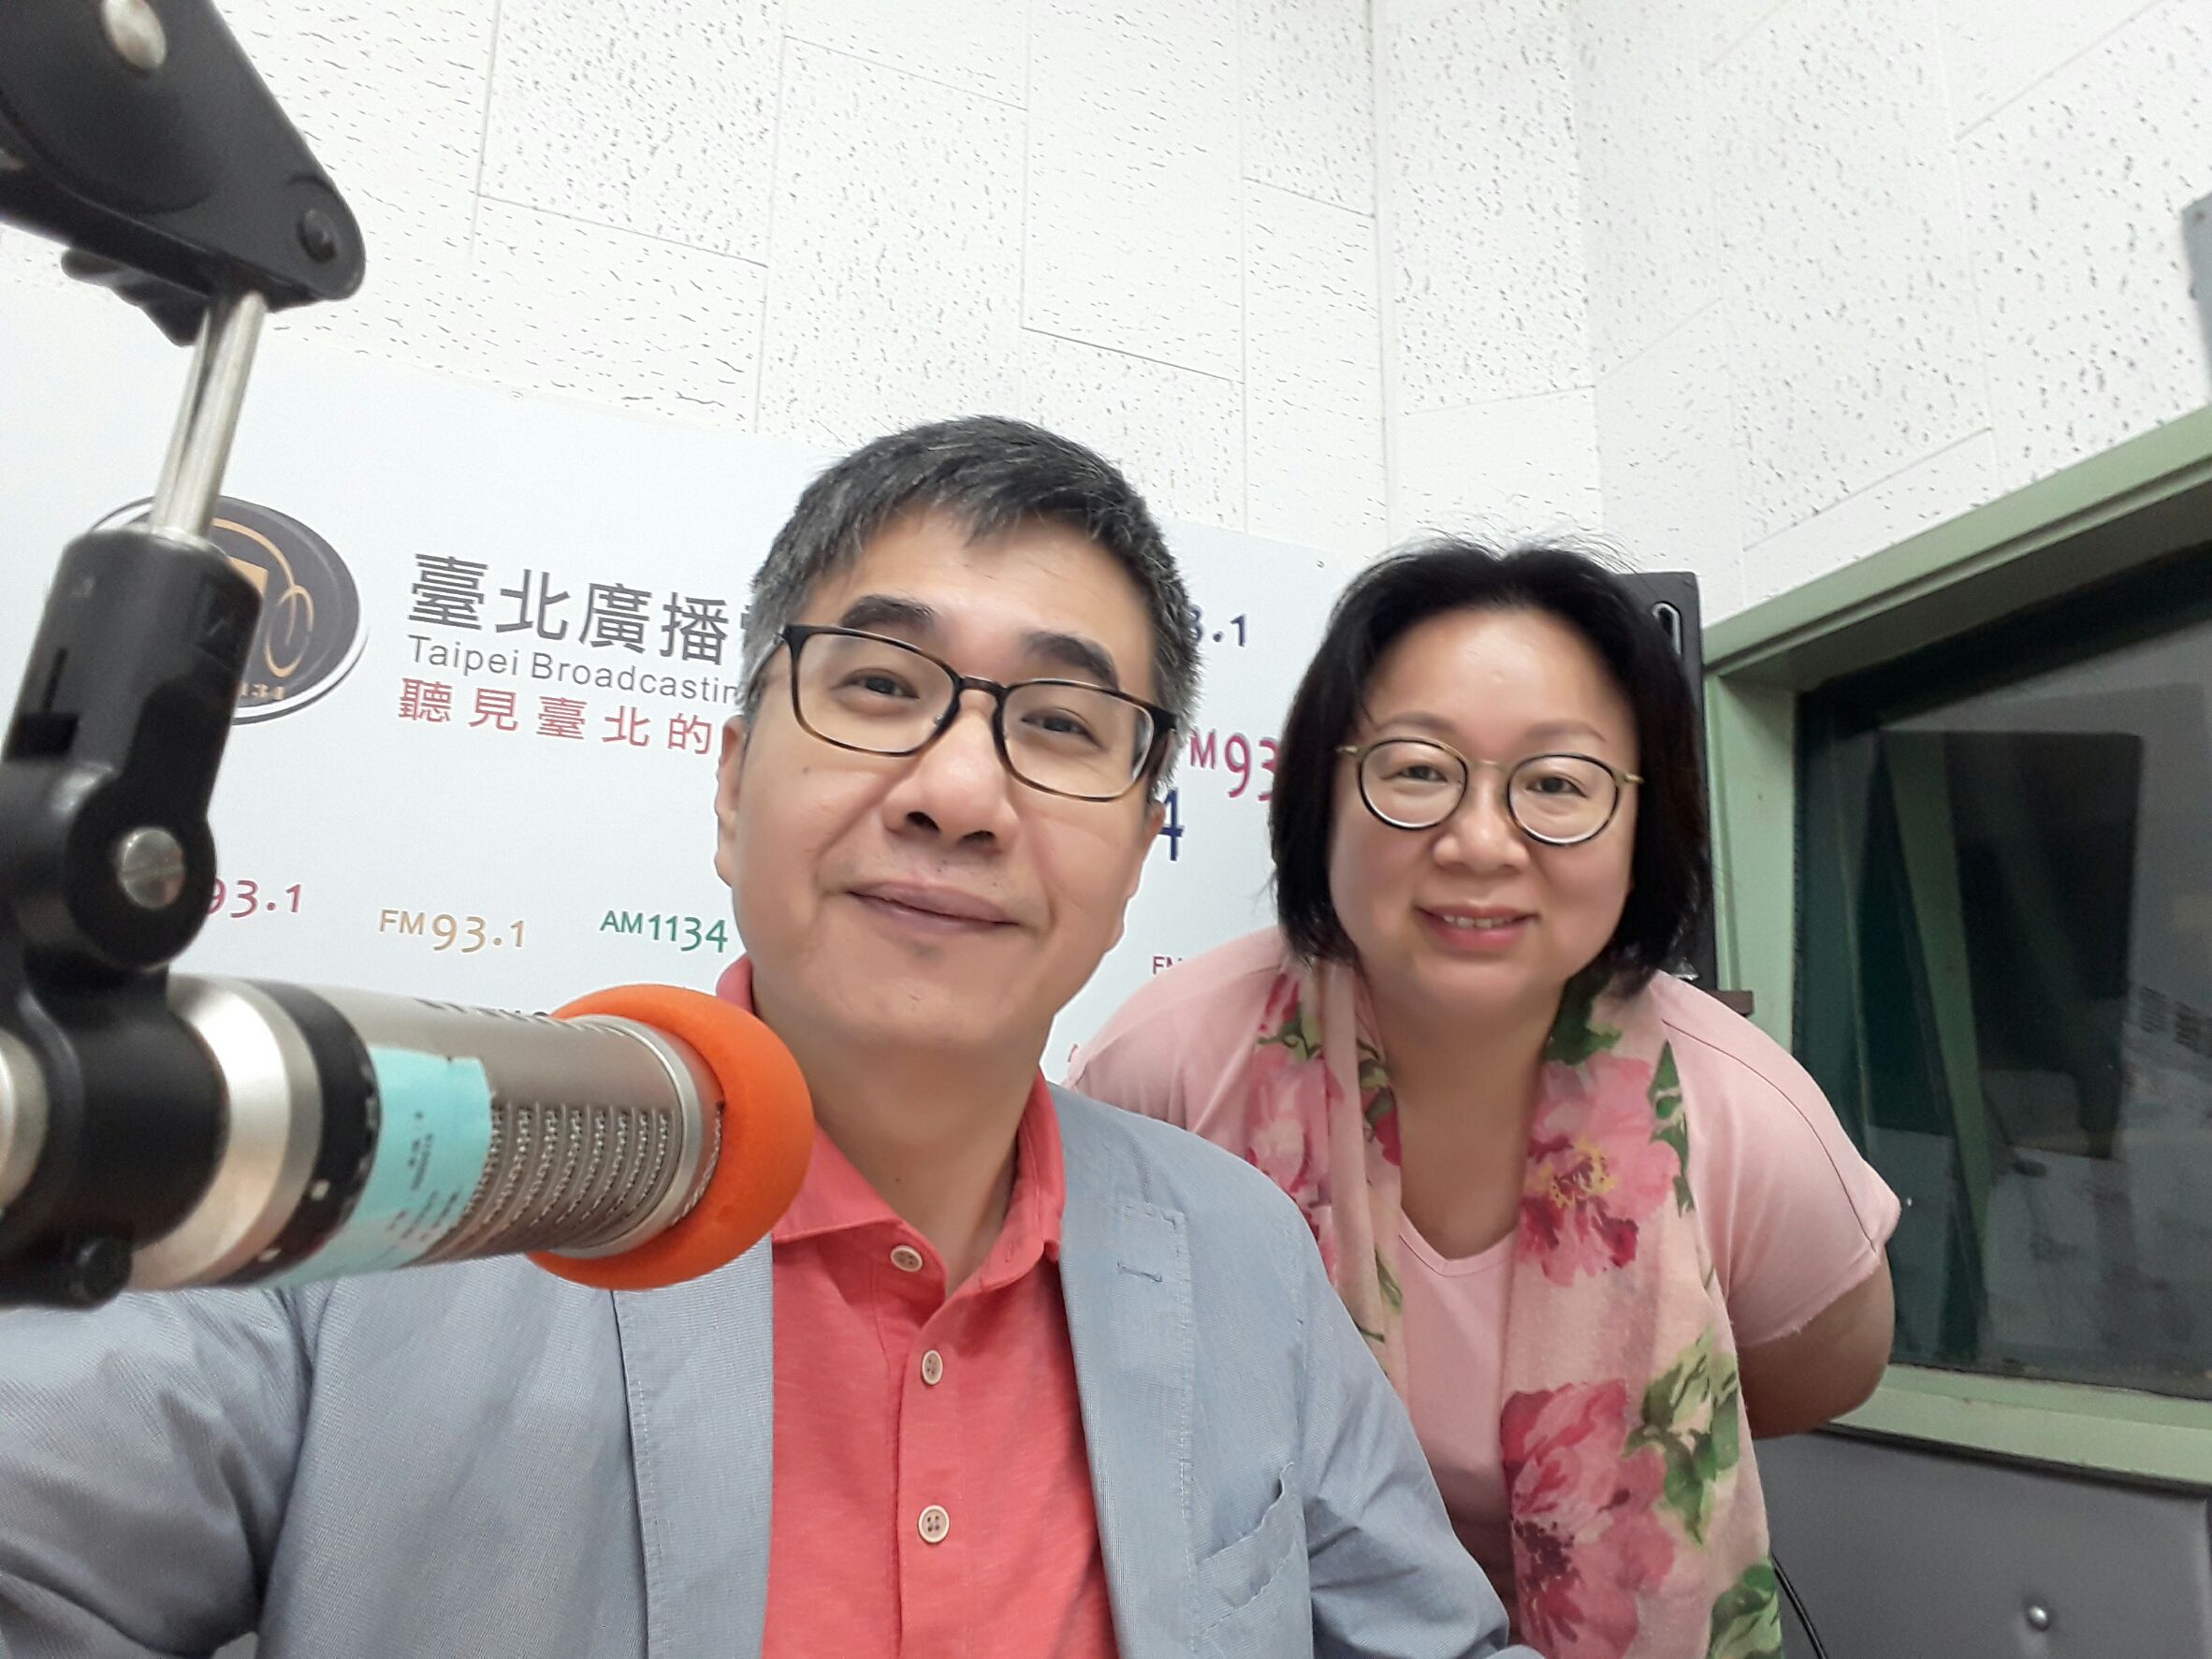 王一明(王騰懋)、梅子(張文玲)主持的《一鳴沒驚人》入圍流行音樂節目獎